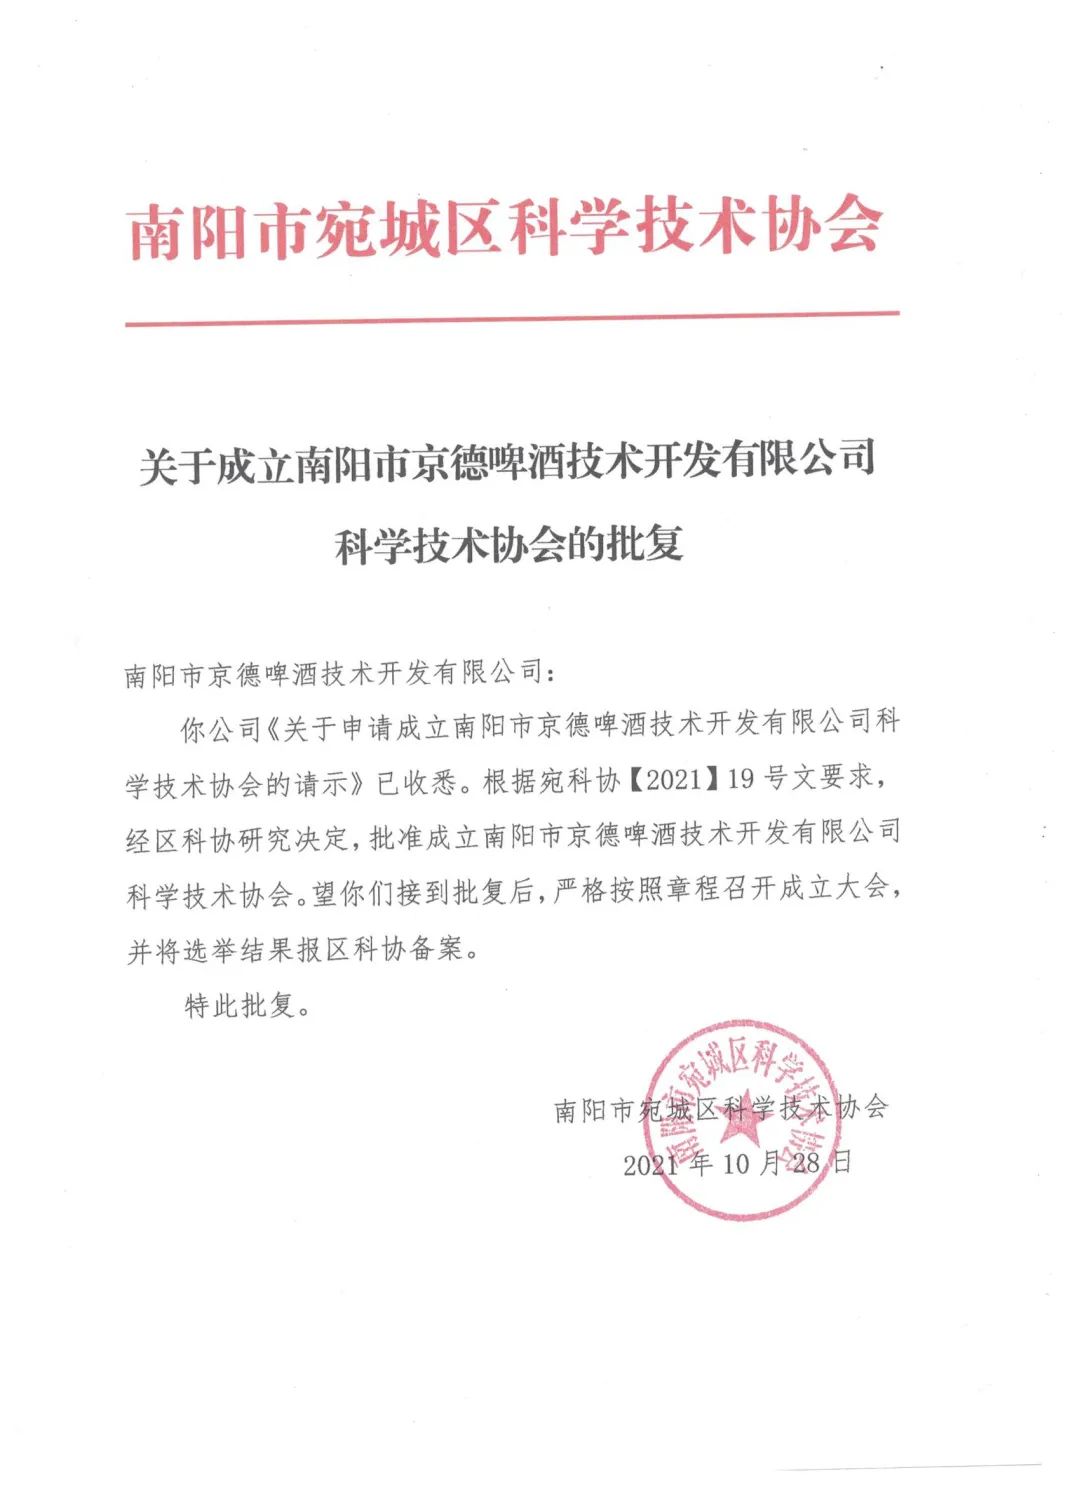 南阳京德啤酒技术开发有限企业 科学技术协会成立